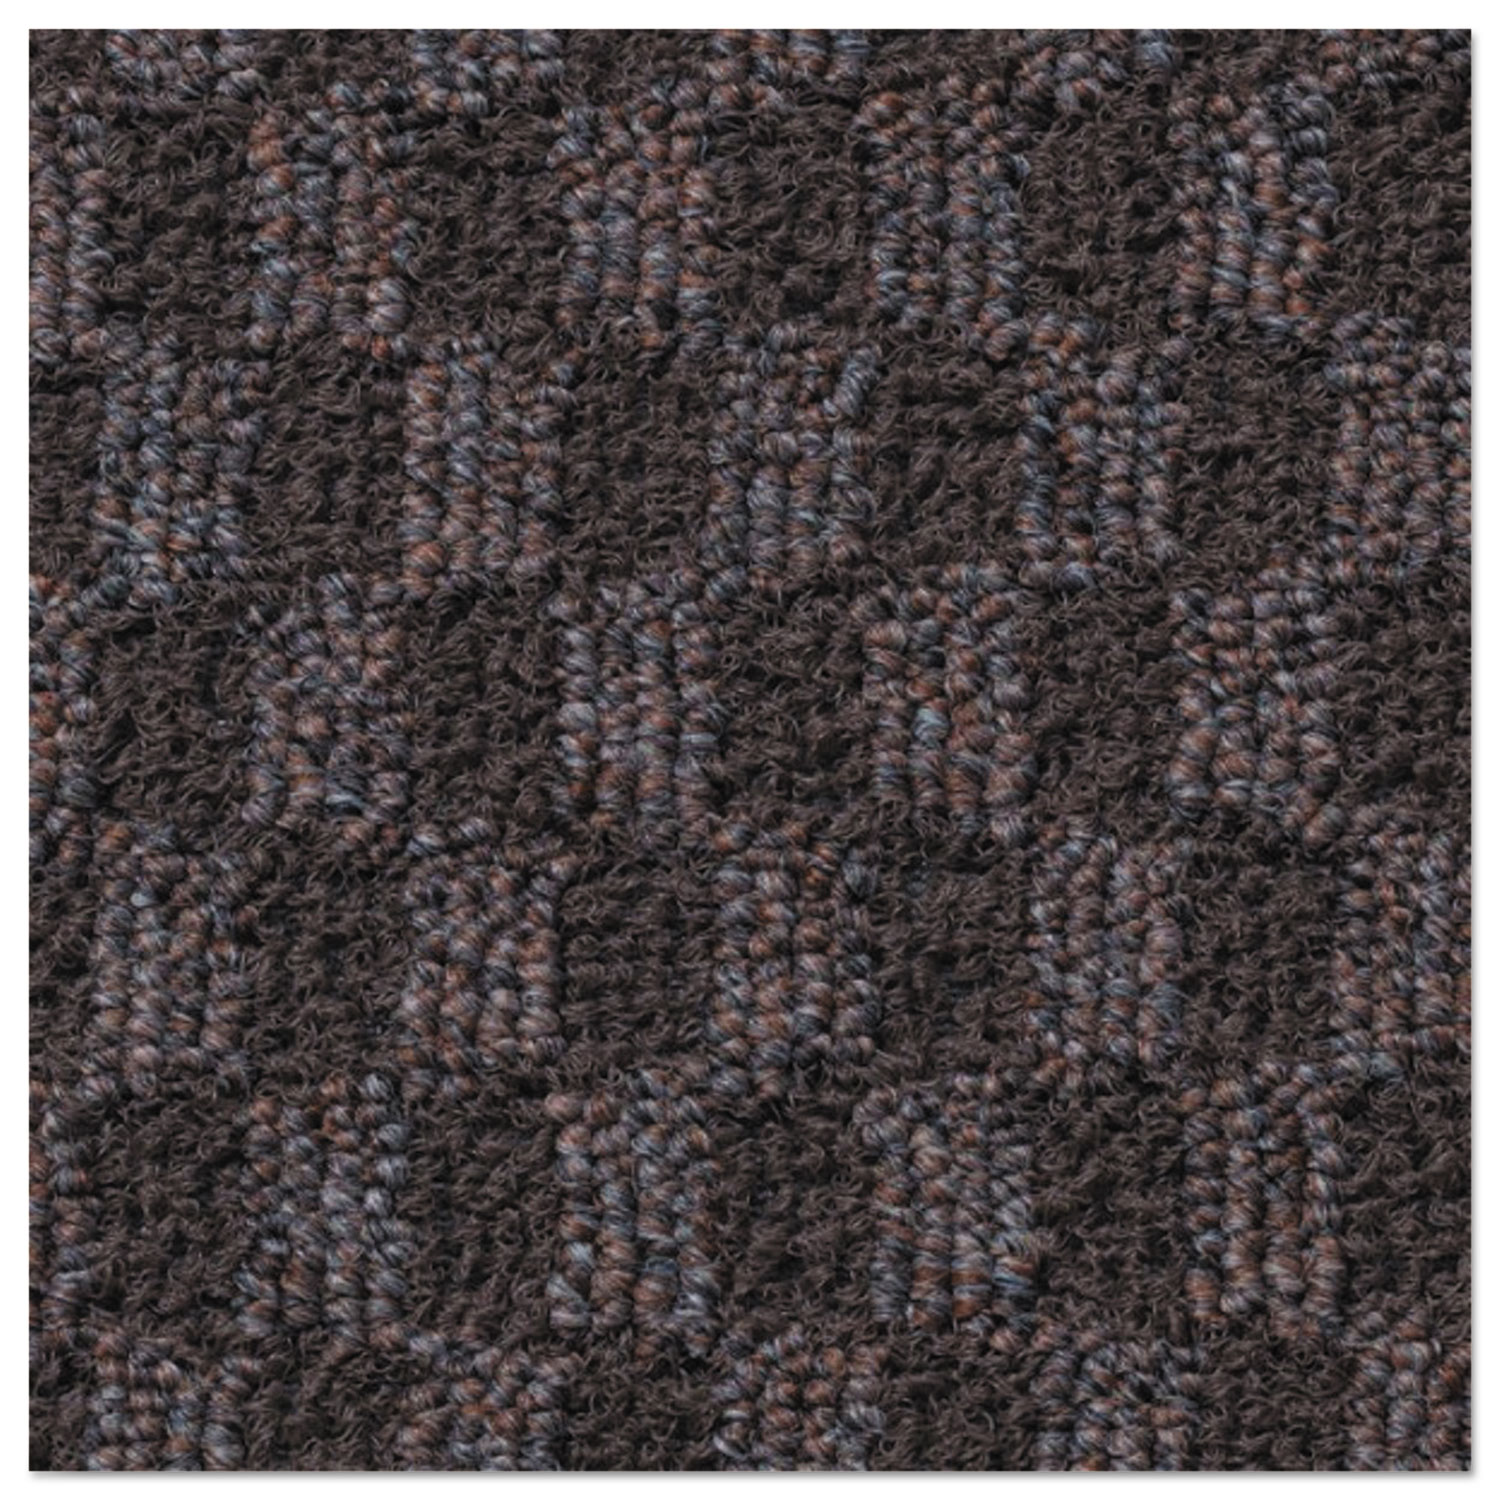 Nomad 6500 Carpet Matting, Polypropylene, 72 x 120, Brown